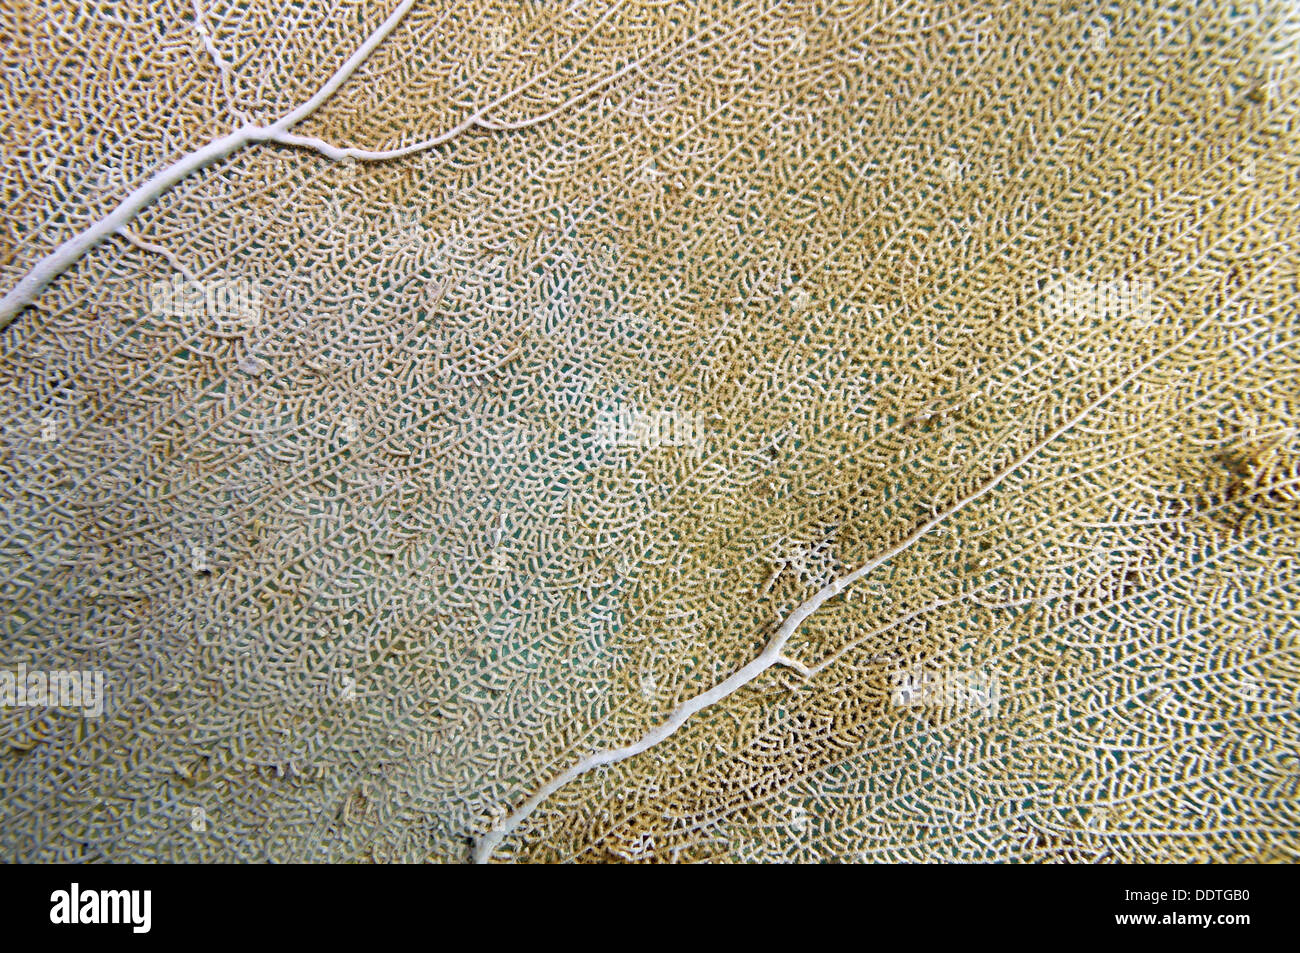 Detail of a sea fan, Gorgonia ventalina, Caribbean sea, Puerto Rico Stock Photo